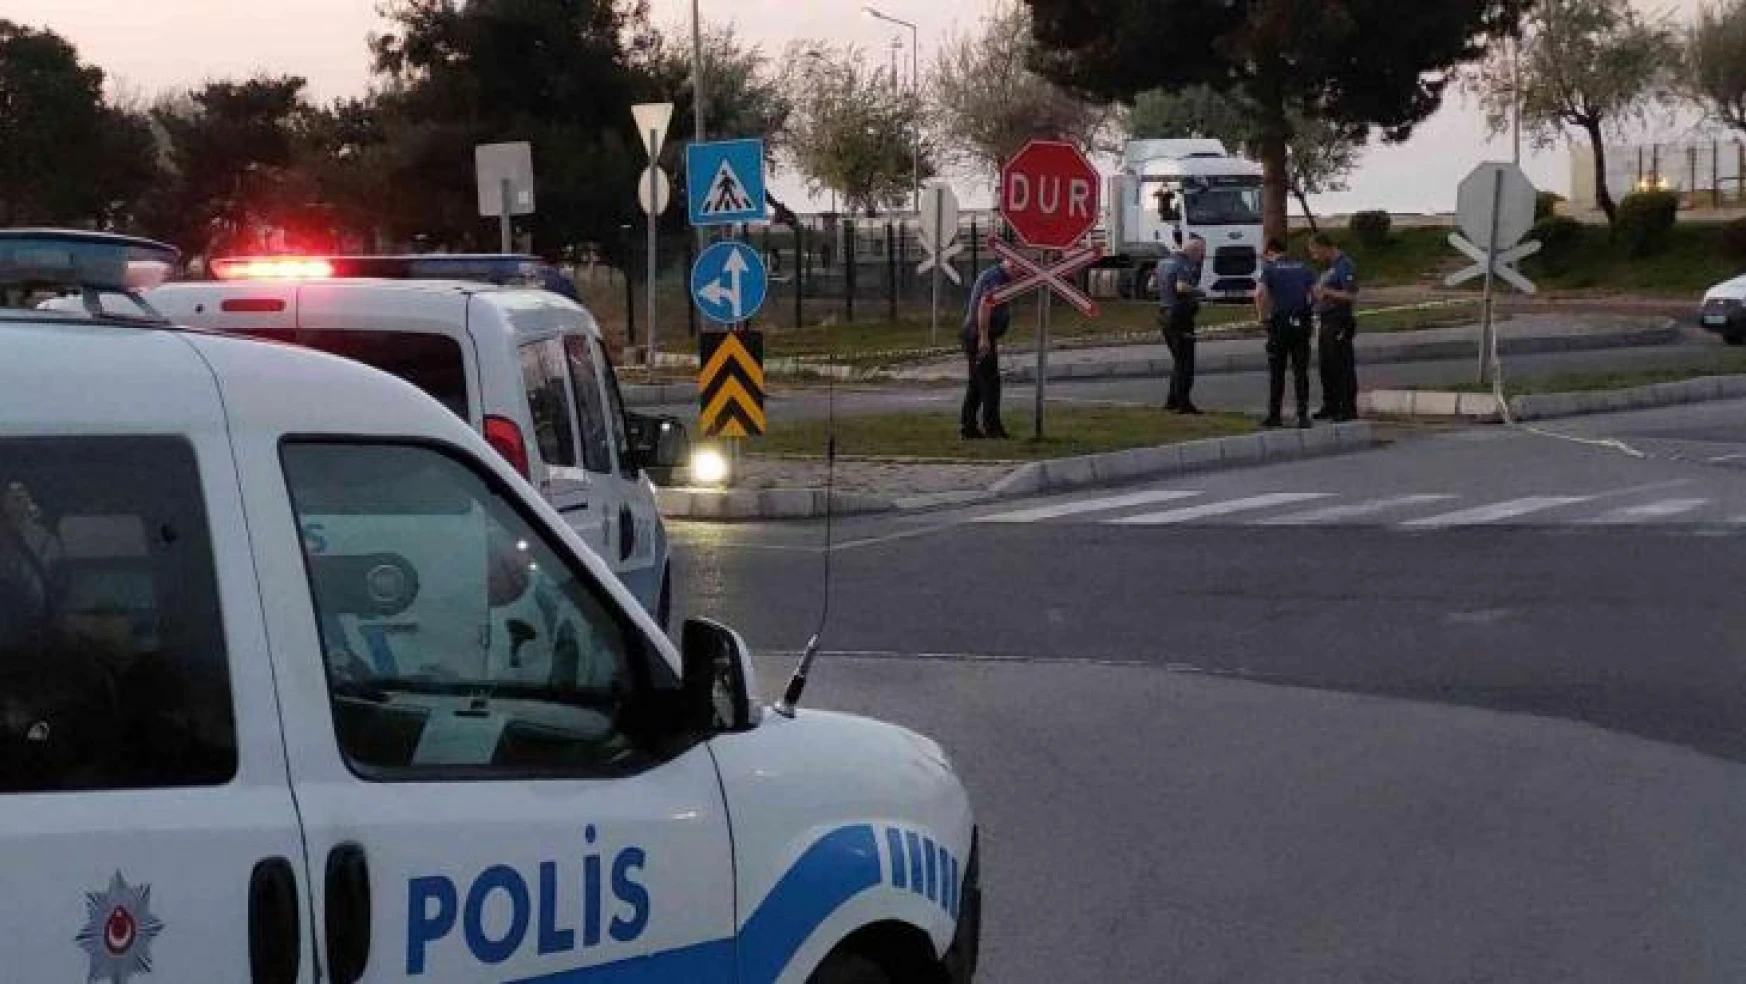 Samsun'da silahlı bıçaklı kavga: 2 yaralı